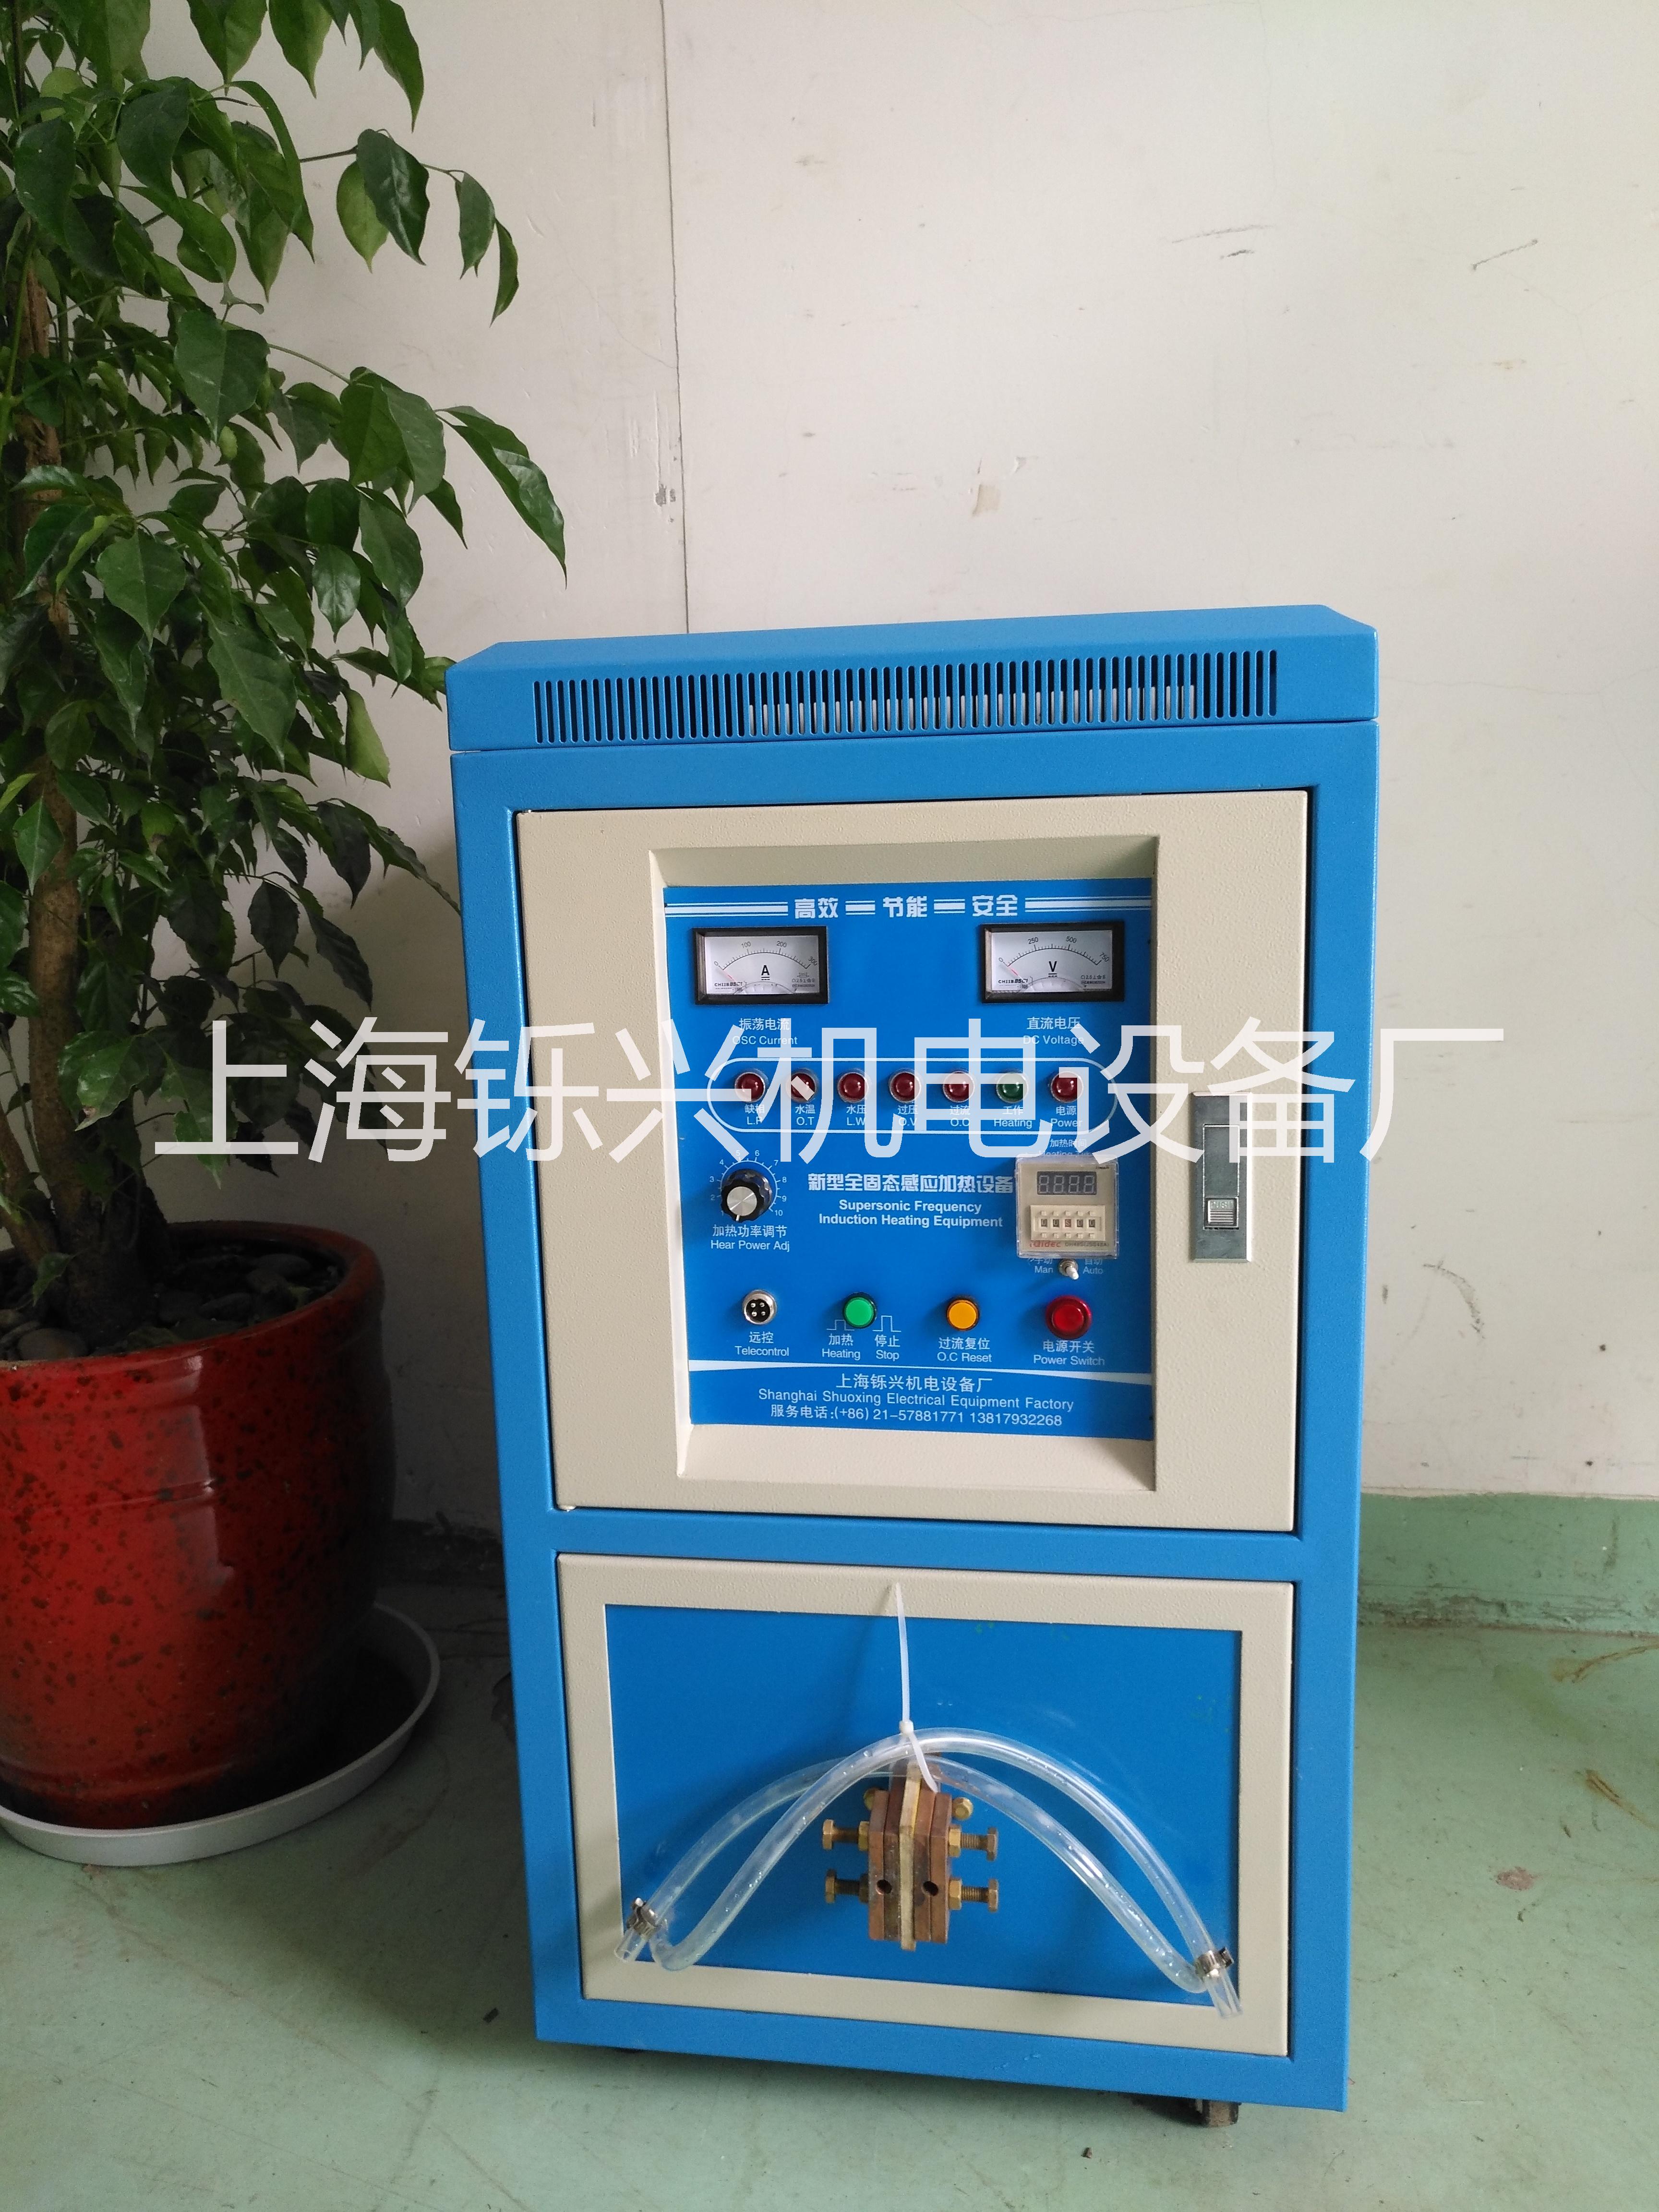 高频感应加热焊机专业品牌上海铄兴图片